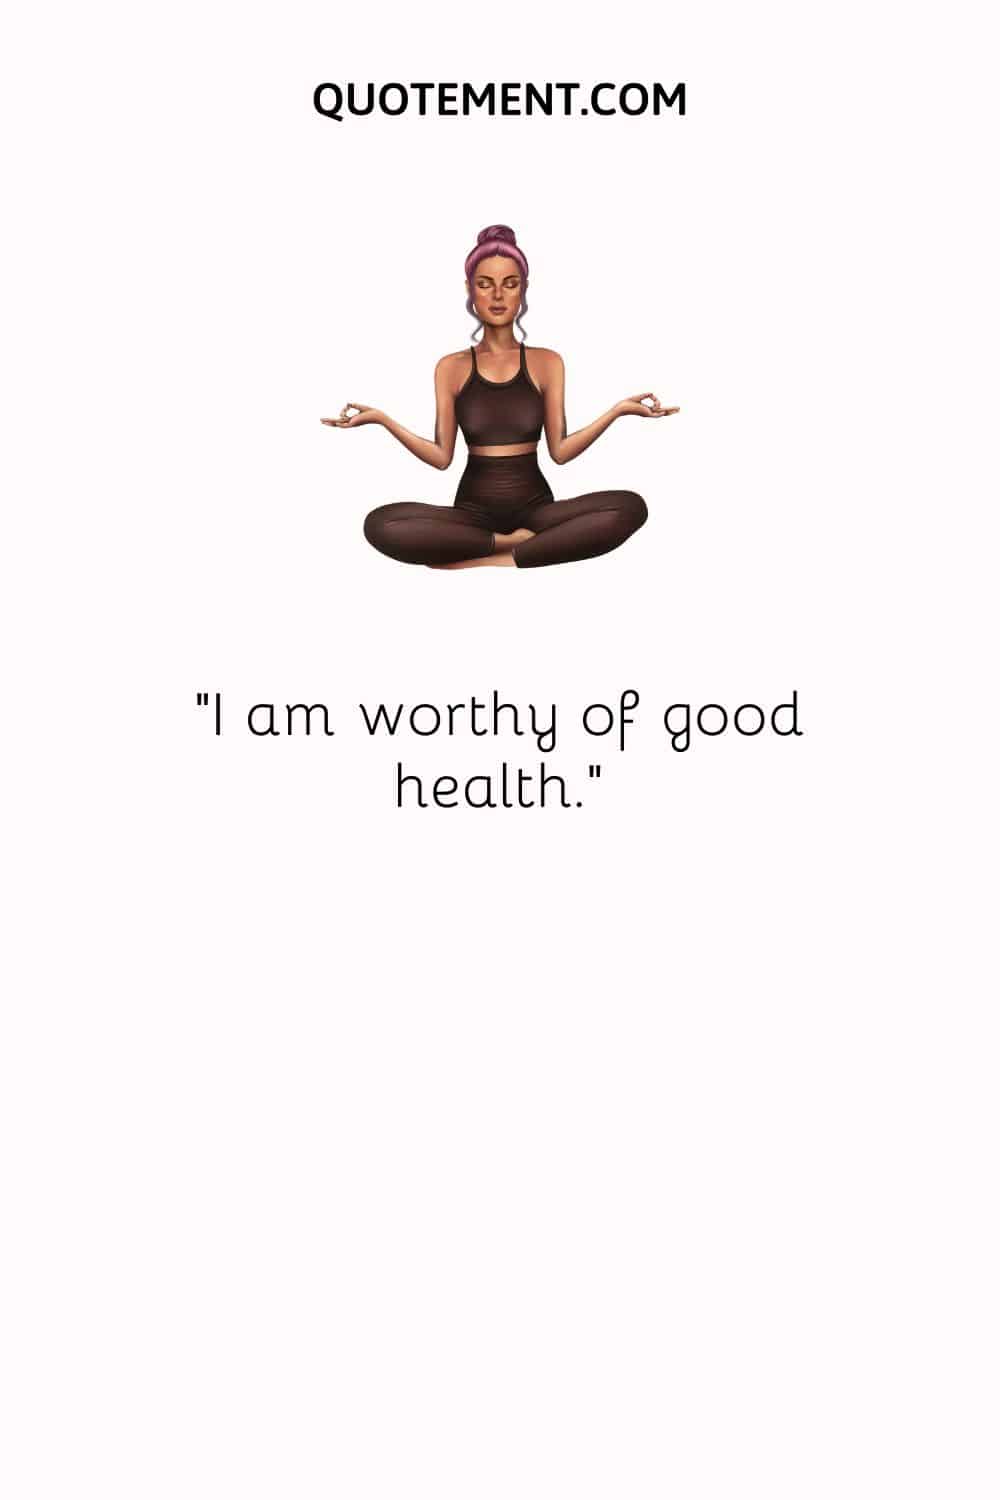 I am worthy of good health